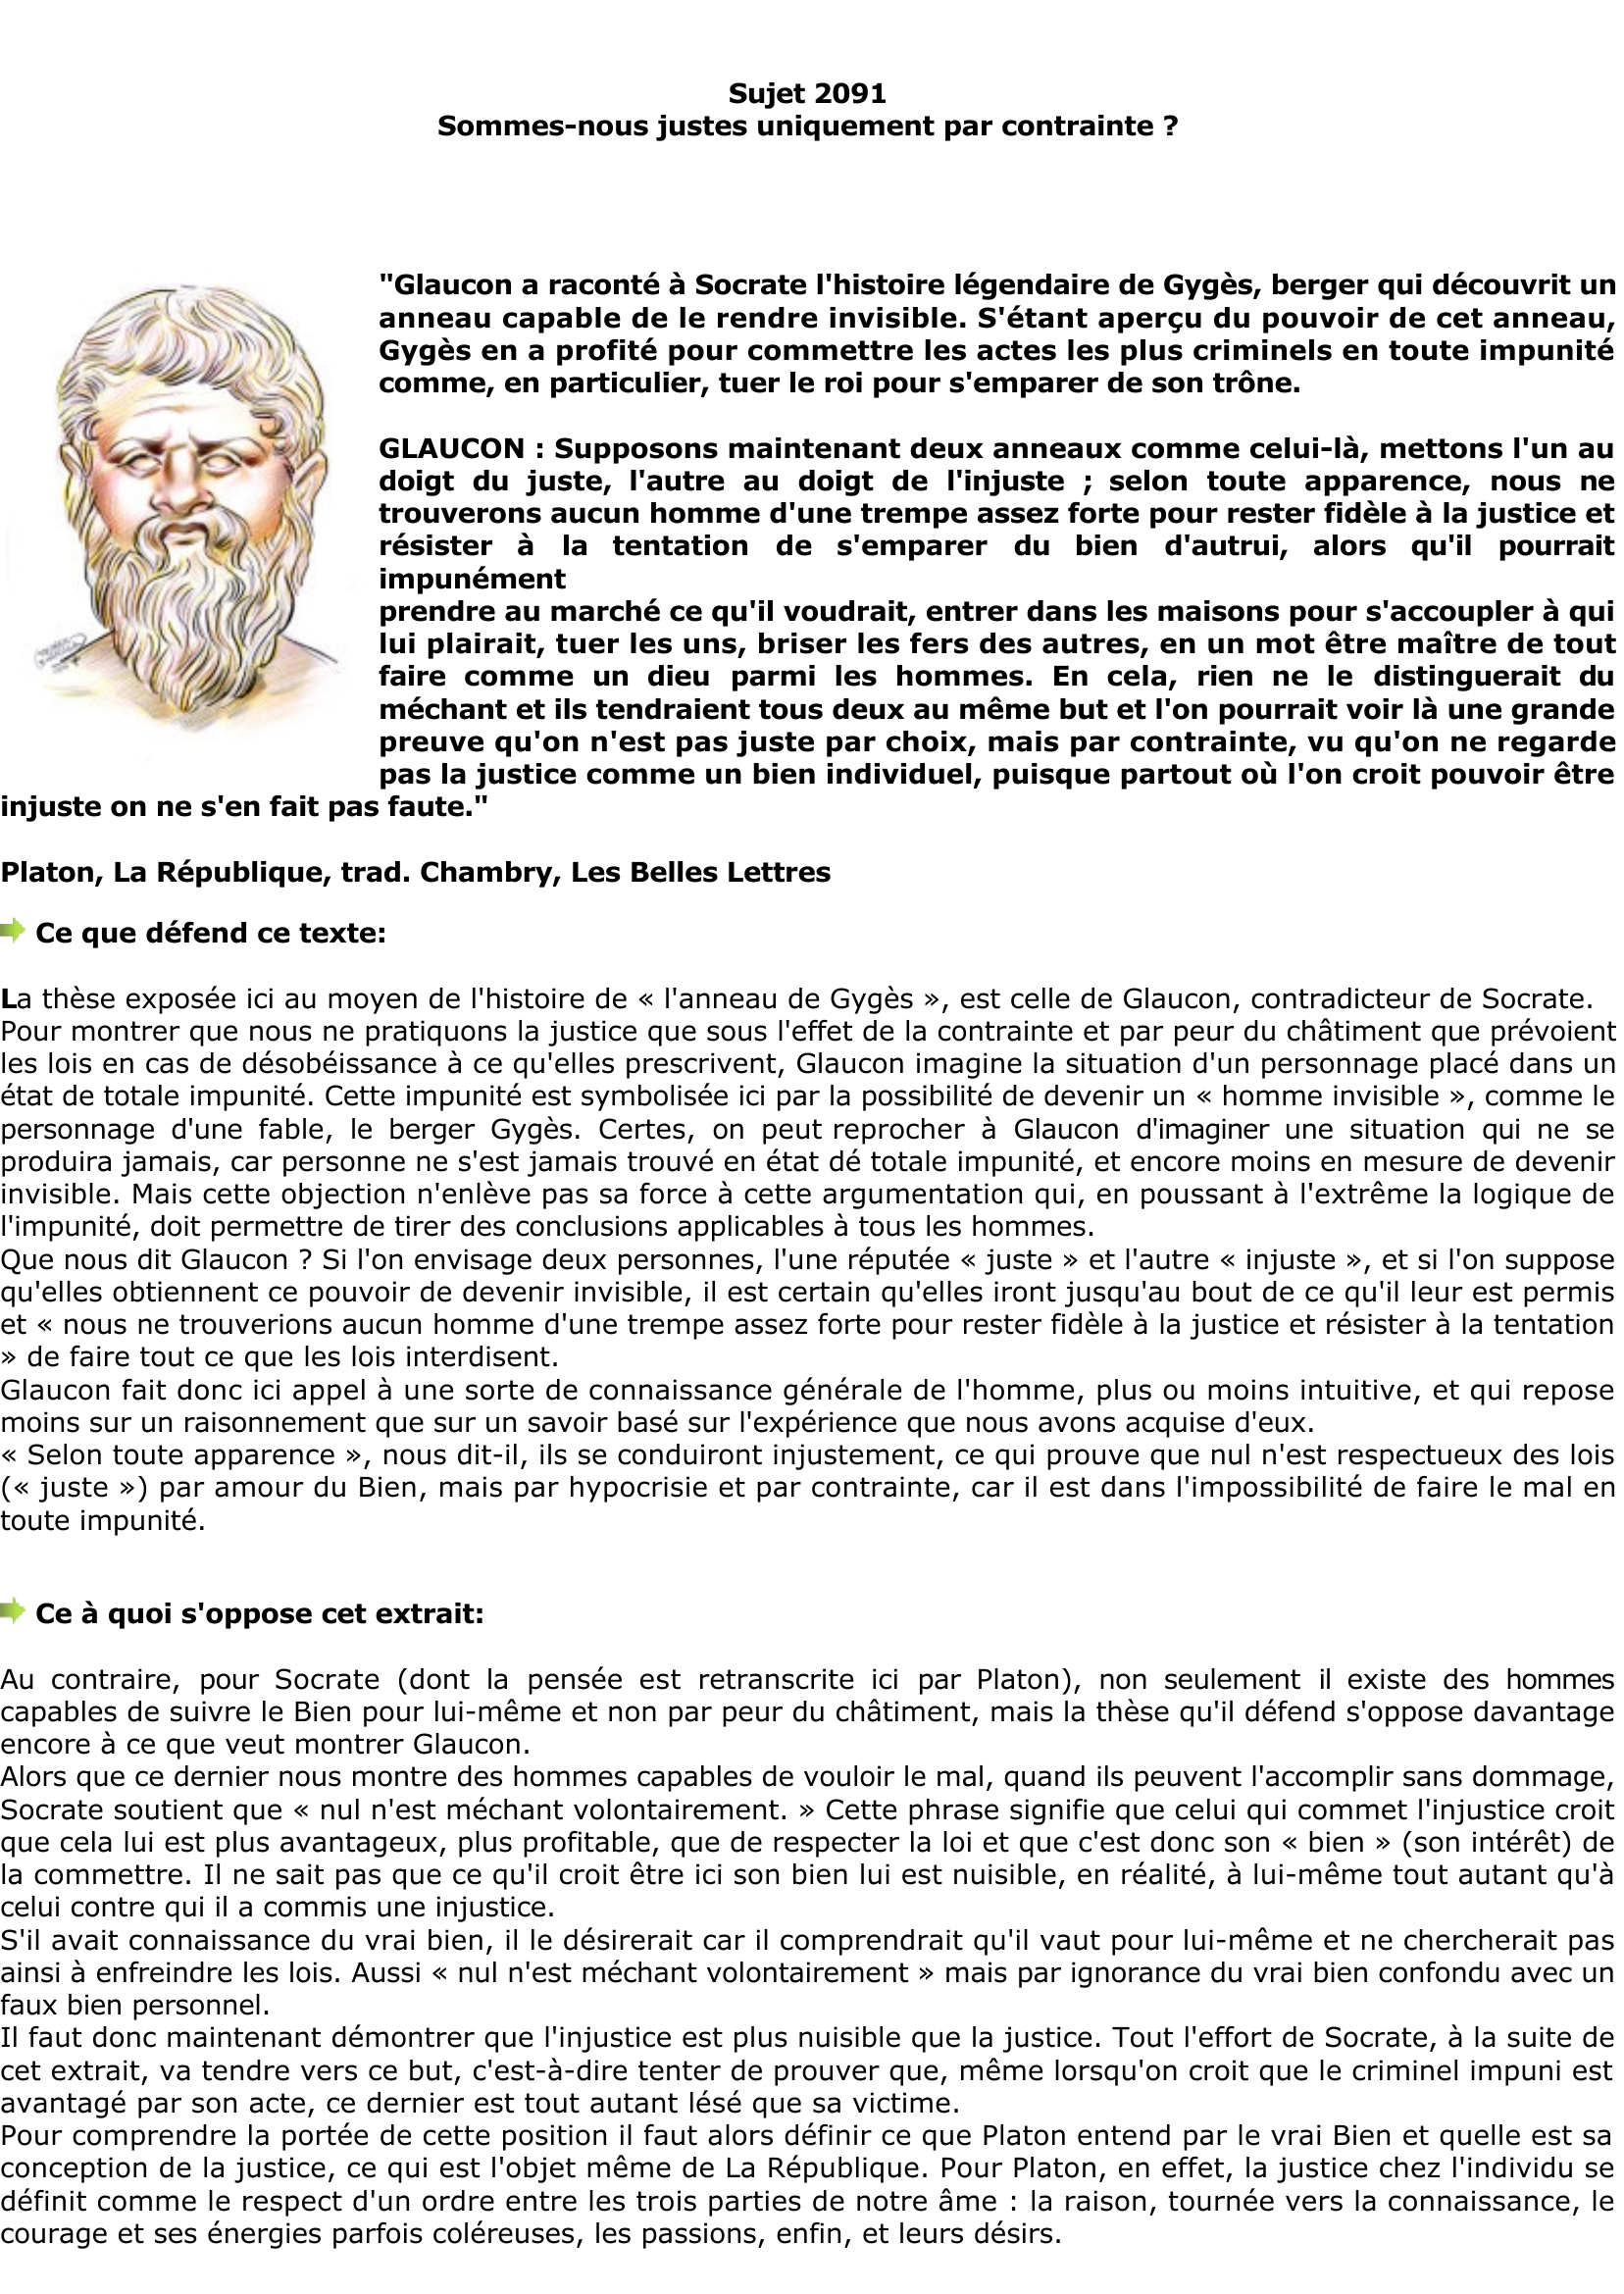 Prévisualisation du document Platon: Sommes-nous justes 

uniquement par contrainte ?